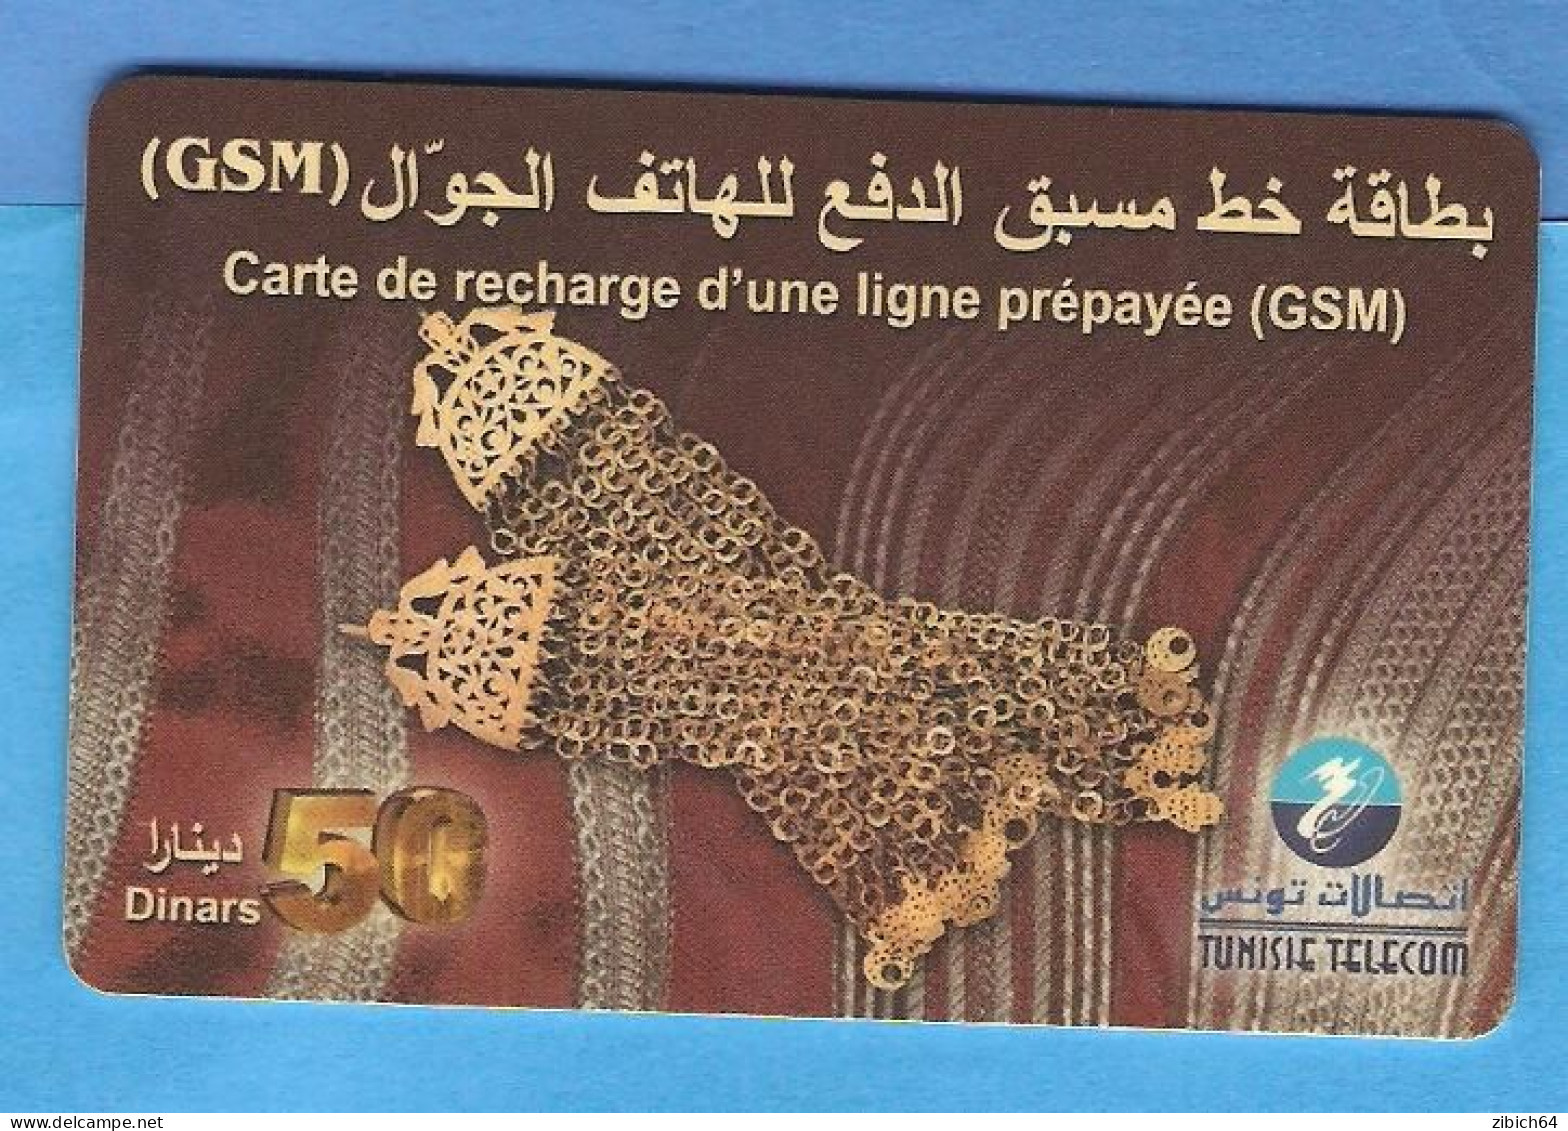 TUNISIA Prepaid Phonecard - Tunisie